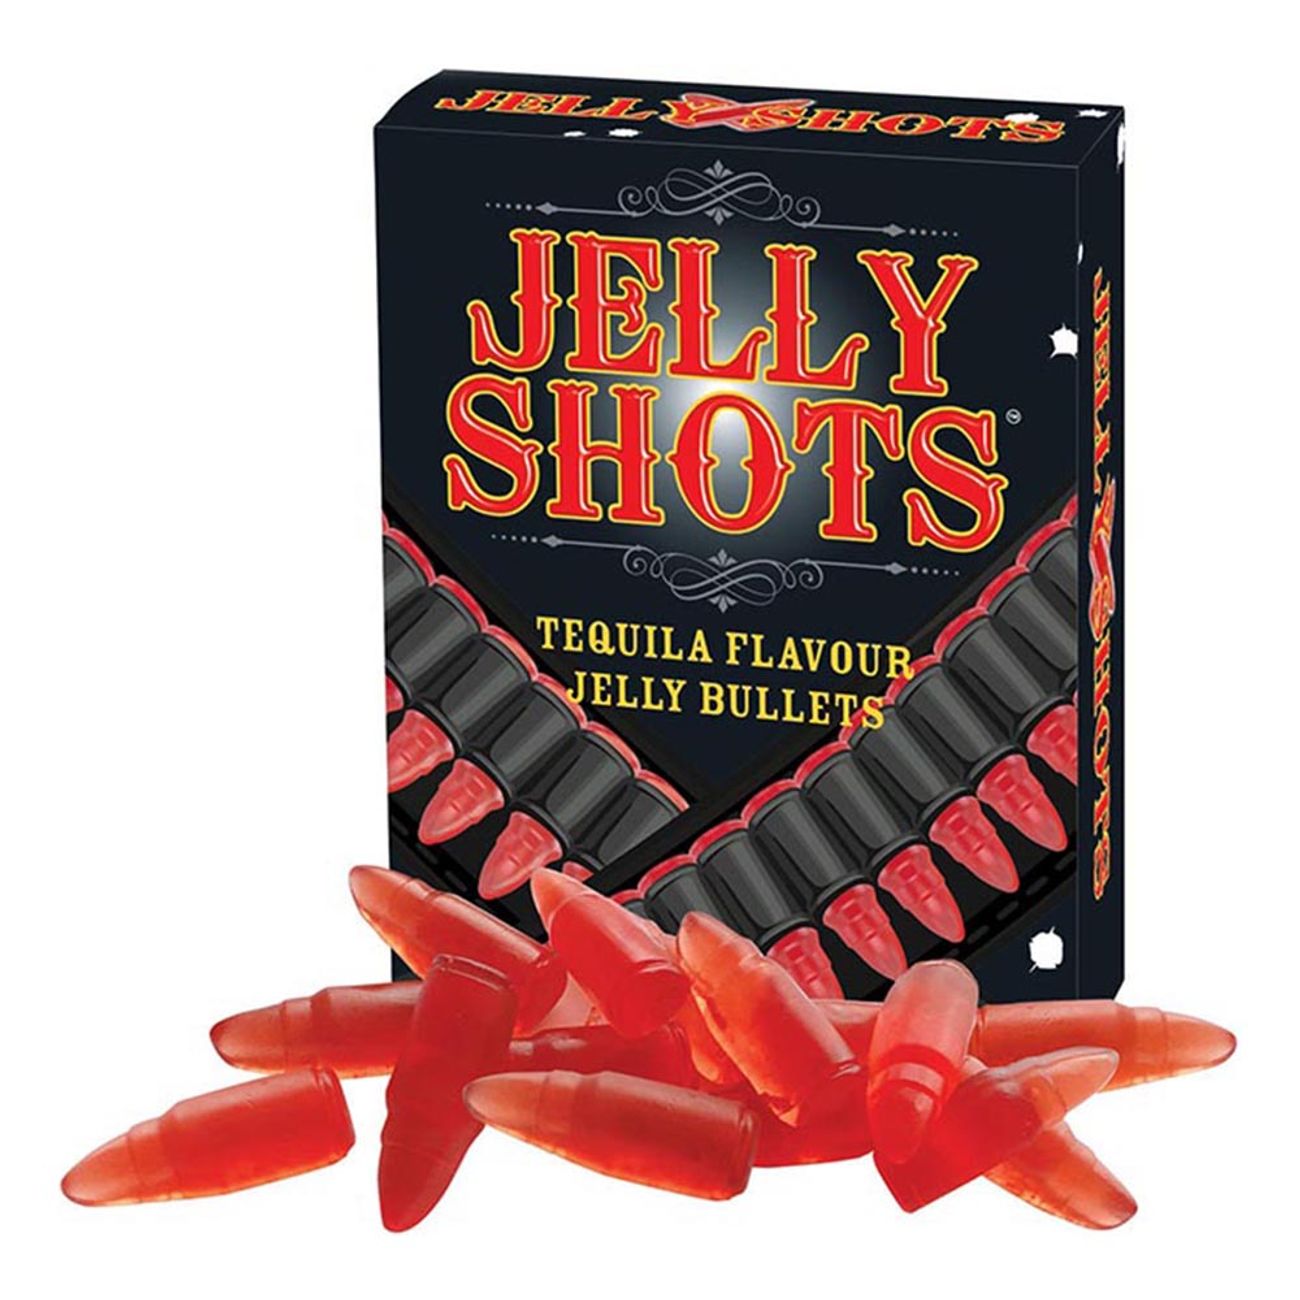 jelly-shots-1